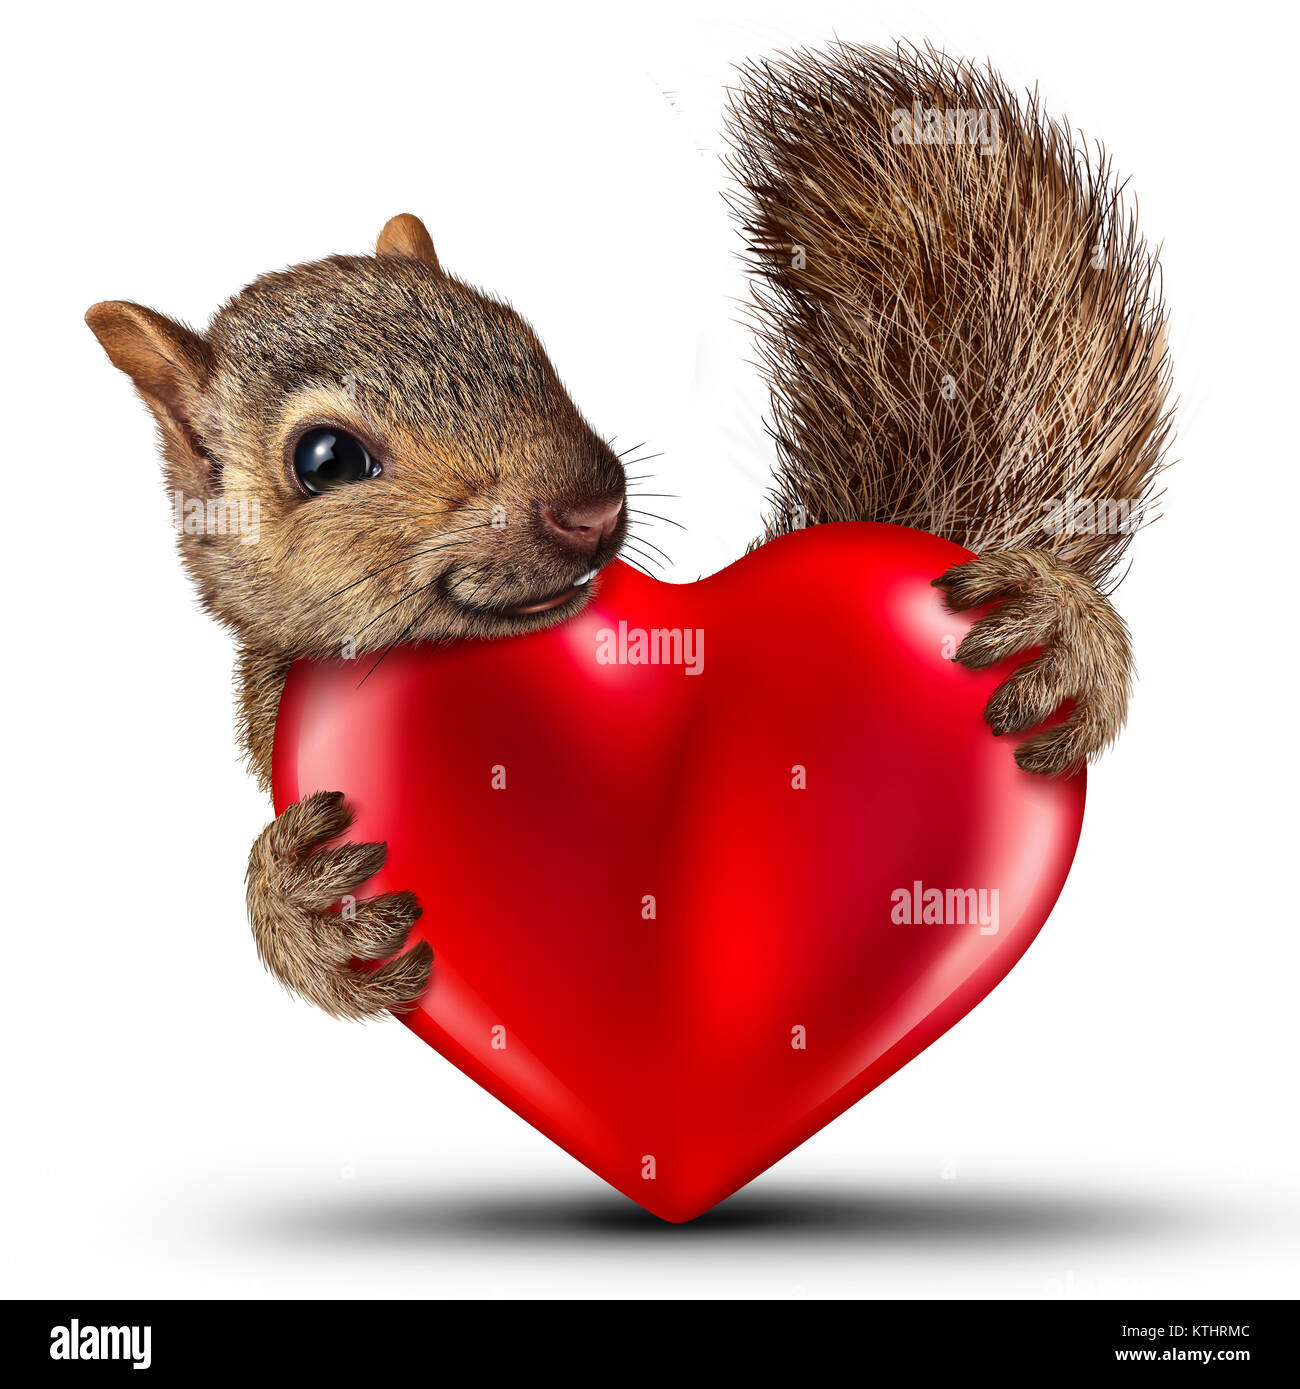 Écureuil Valentine comme un symbole de la célébration de la Saint-Valentin avec un plaisir animal sauvage tenant un cœur rouge. Banque D'Images